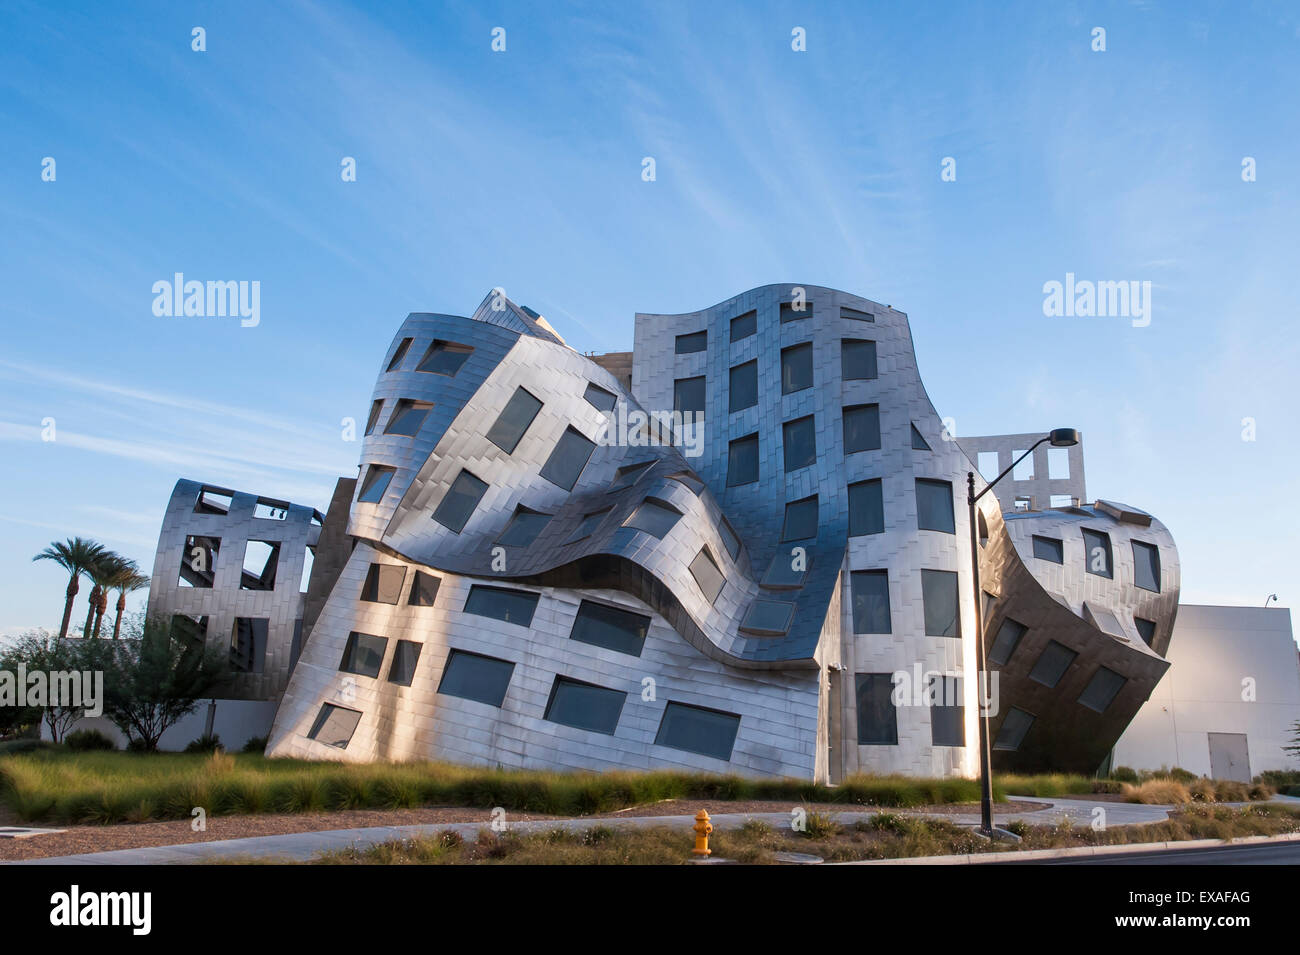 Cleveland Klinik Lou Ruvo Center für die Gesundheit des Gehirns Gebäude von  Frank Gehry, Las Vegas, Nevada, Vereinigte Staaten von Amerika  Stockfotografie - Alamy